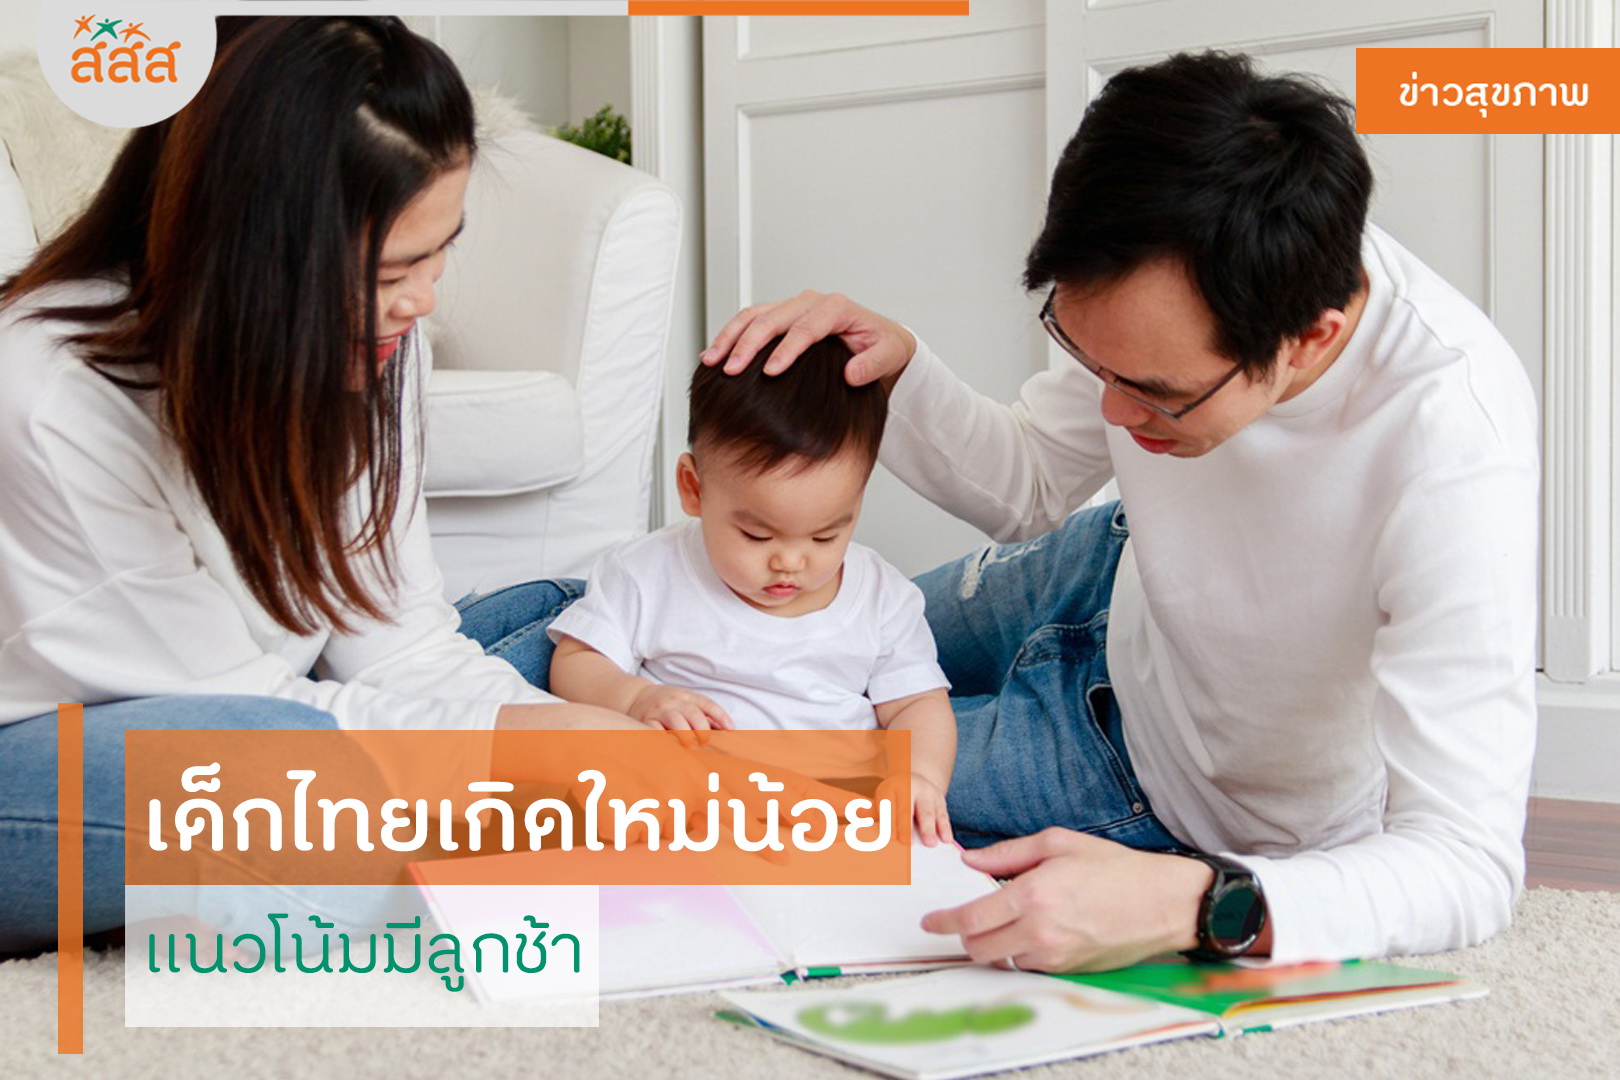 เด็กไทยเกิดใหม่น้อย แนวโน้มมีลูกช้า thaihealth